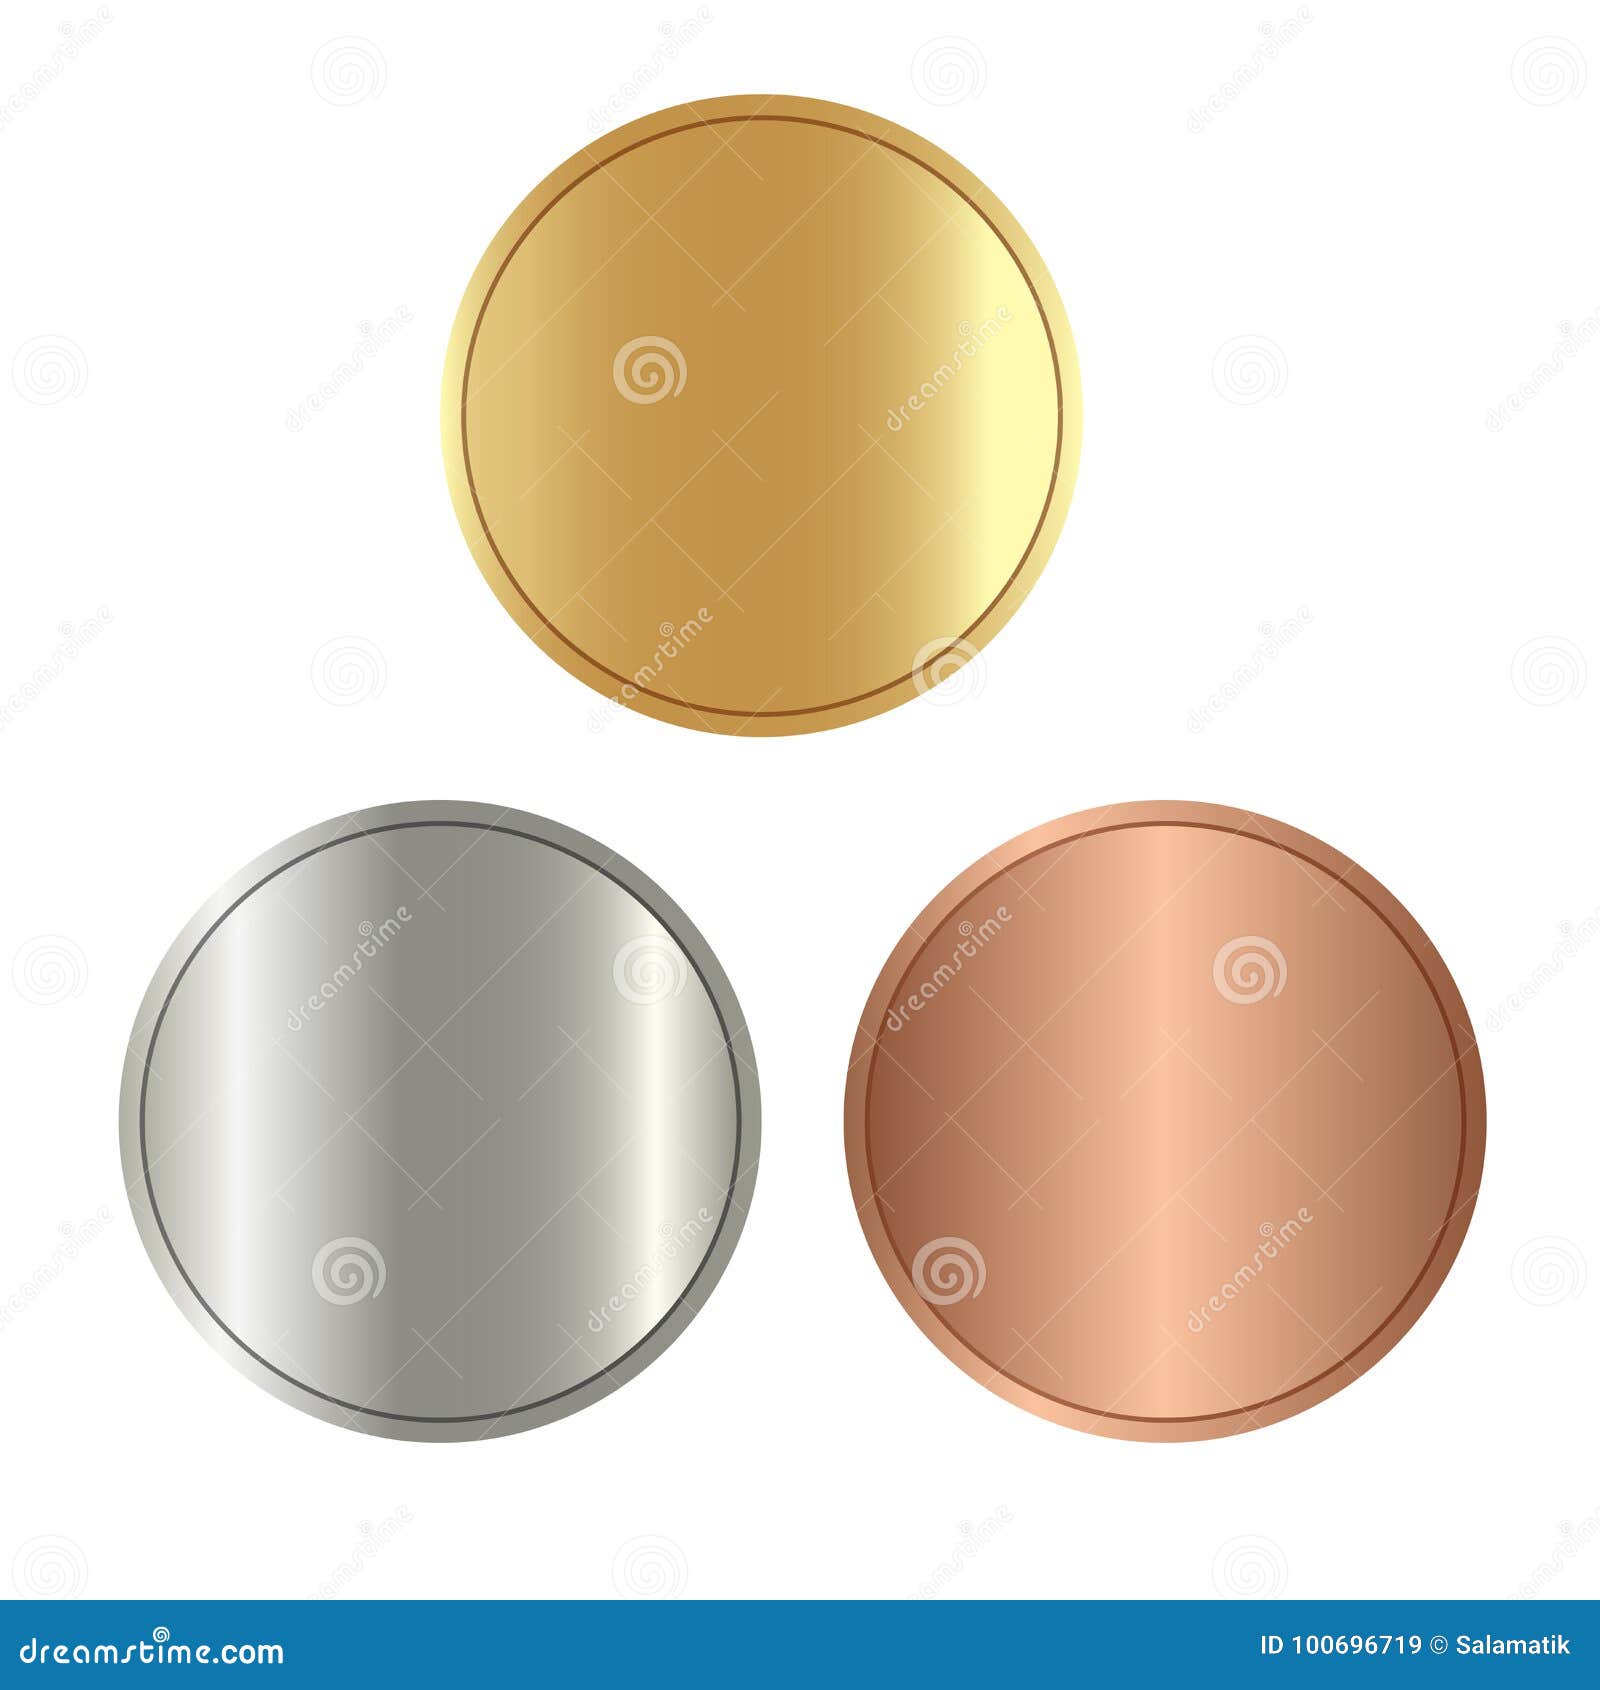 1 золотая 2 серебряные 2 бронзовые. Бронза и золото цвет. Золото серебро бронза. Медаль (цвет: бронза). Цвета золото серебро бронза медь.